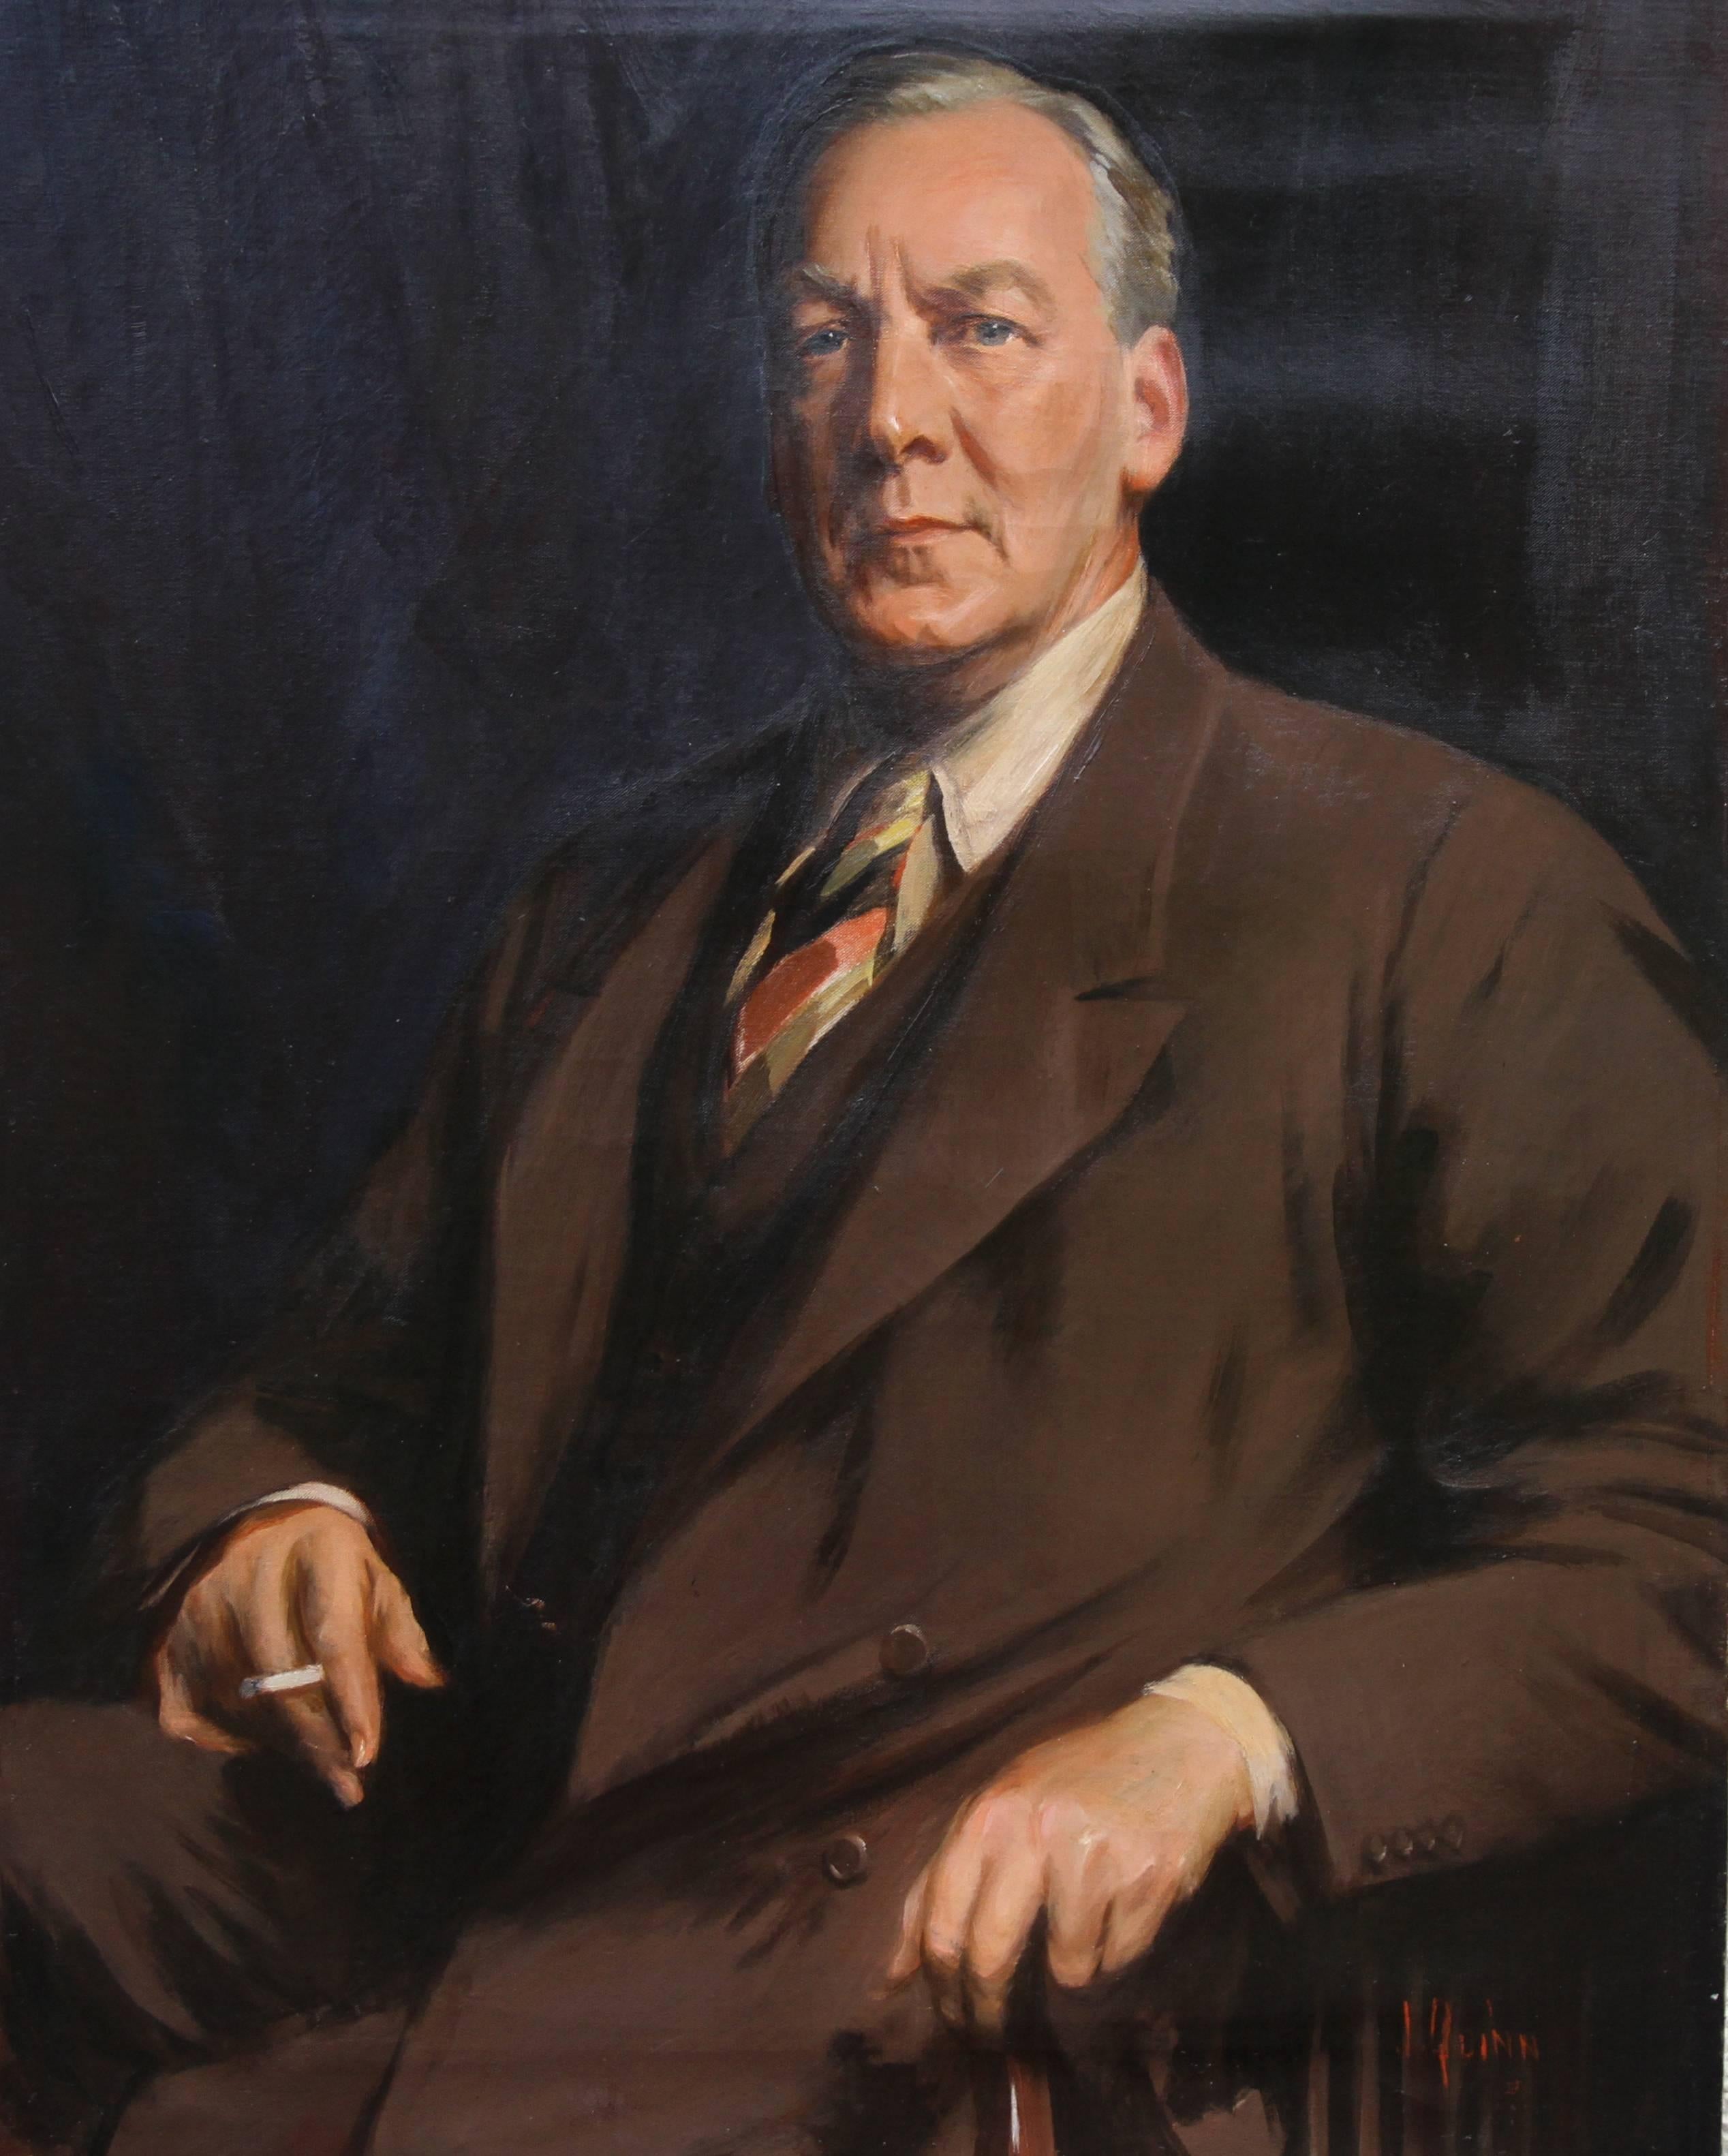 Portrait Painting James Peter Quinn - Portrait de John Gilbert - Peinture à l'huile d'un portrait d'homme de l'art australien exposé dans les années 20